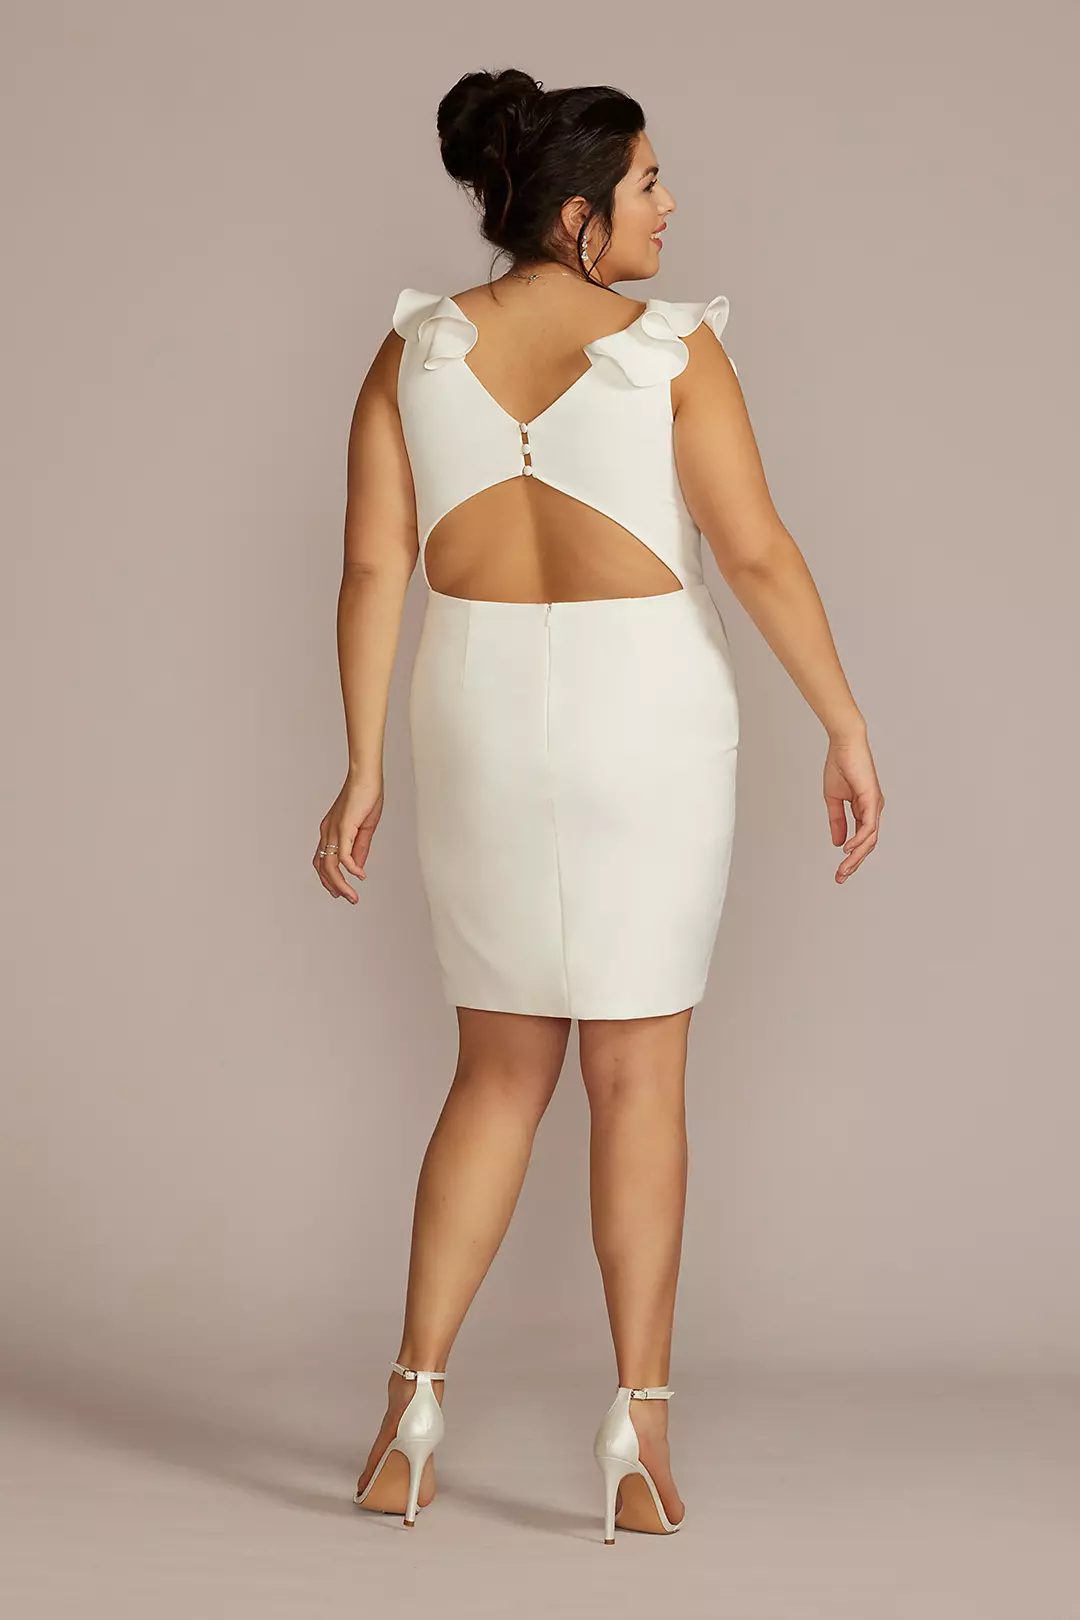 V-Neck Ruffle Short Dress with Open Back Image 2